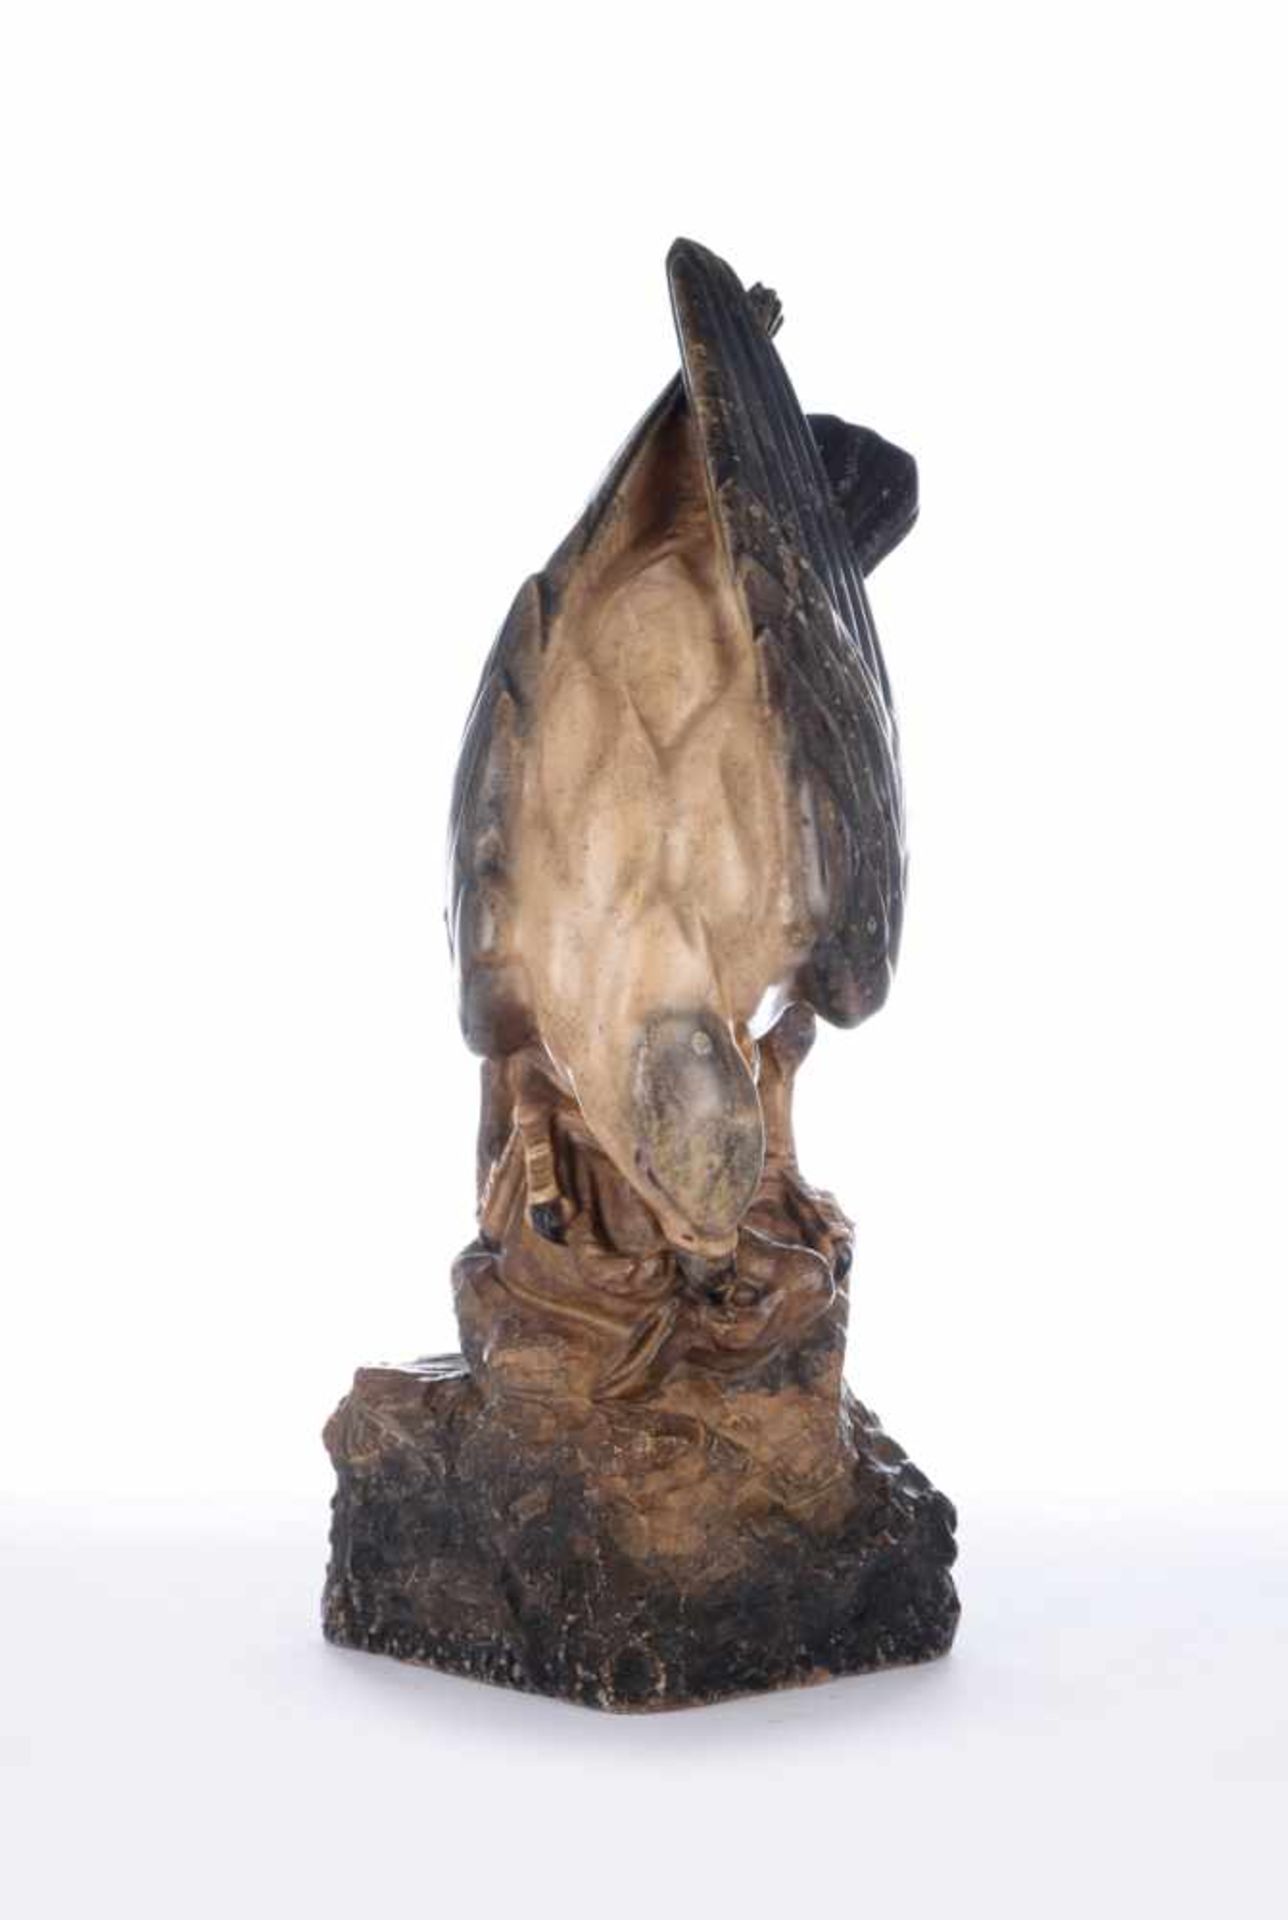 Adler reißt einen Hasen. Naturstein, marmoriert gefasst. Rückseitig signiert Kirchnersowie - Bild 4 aus 7